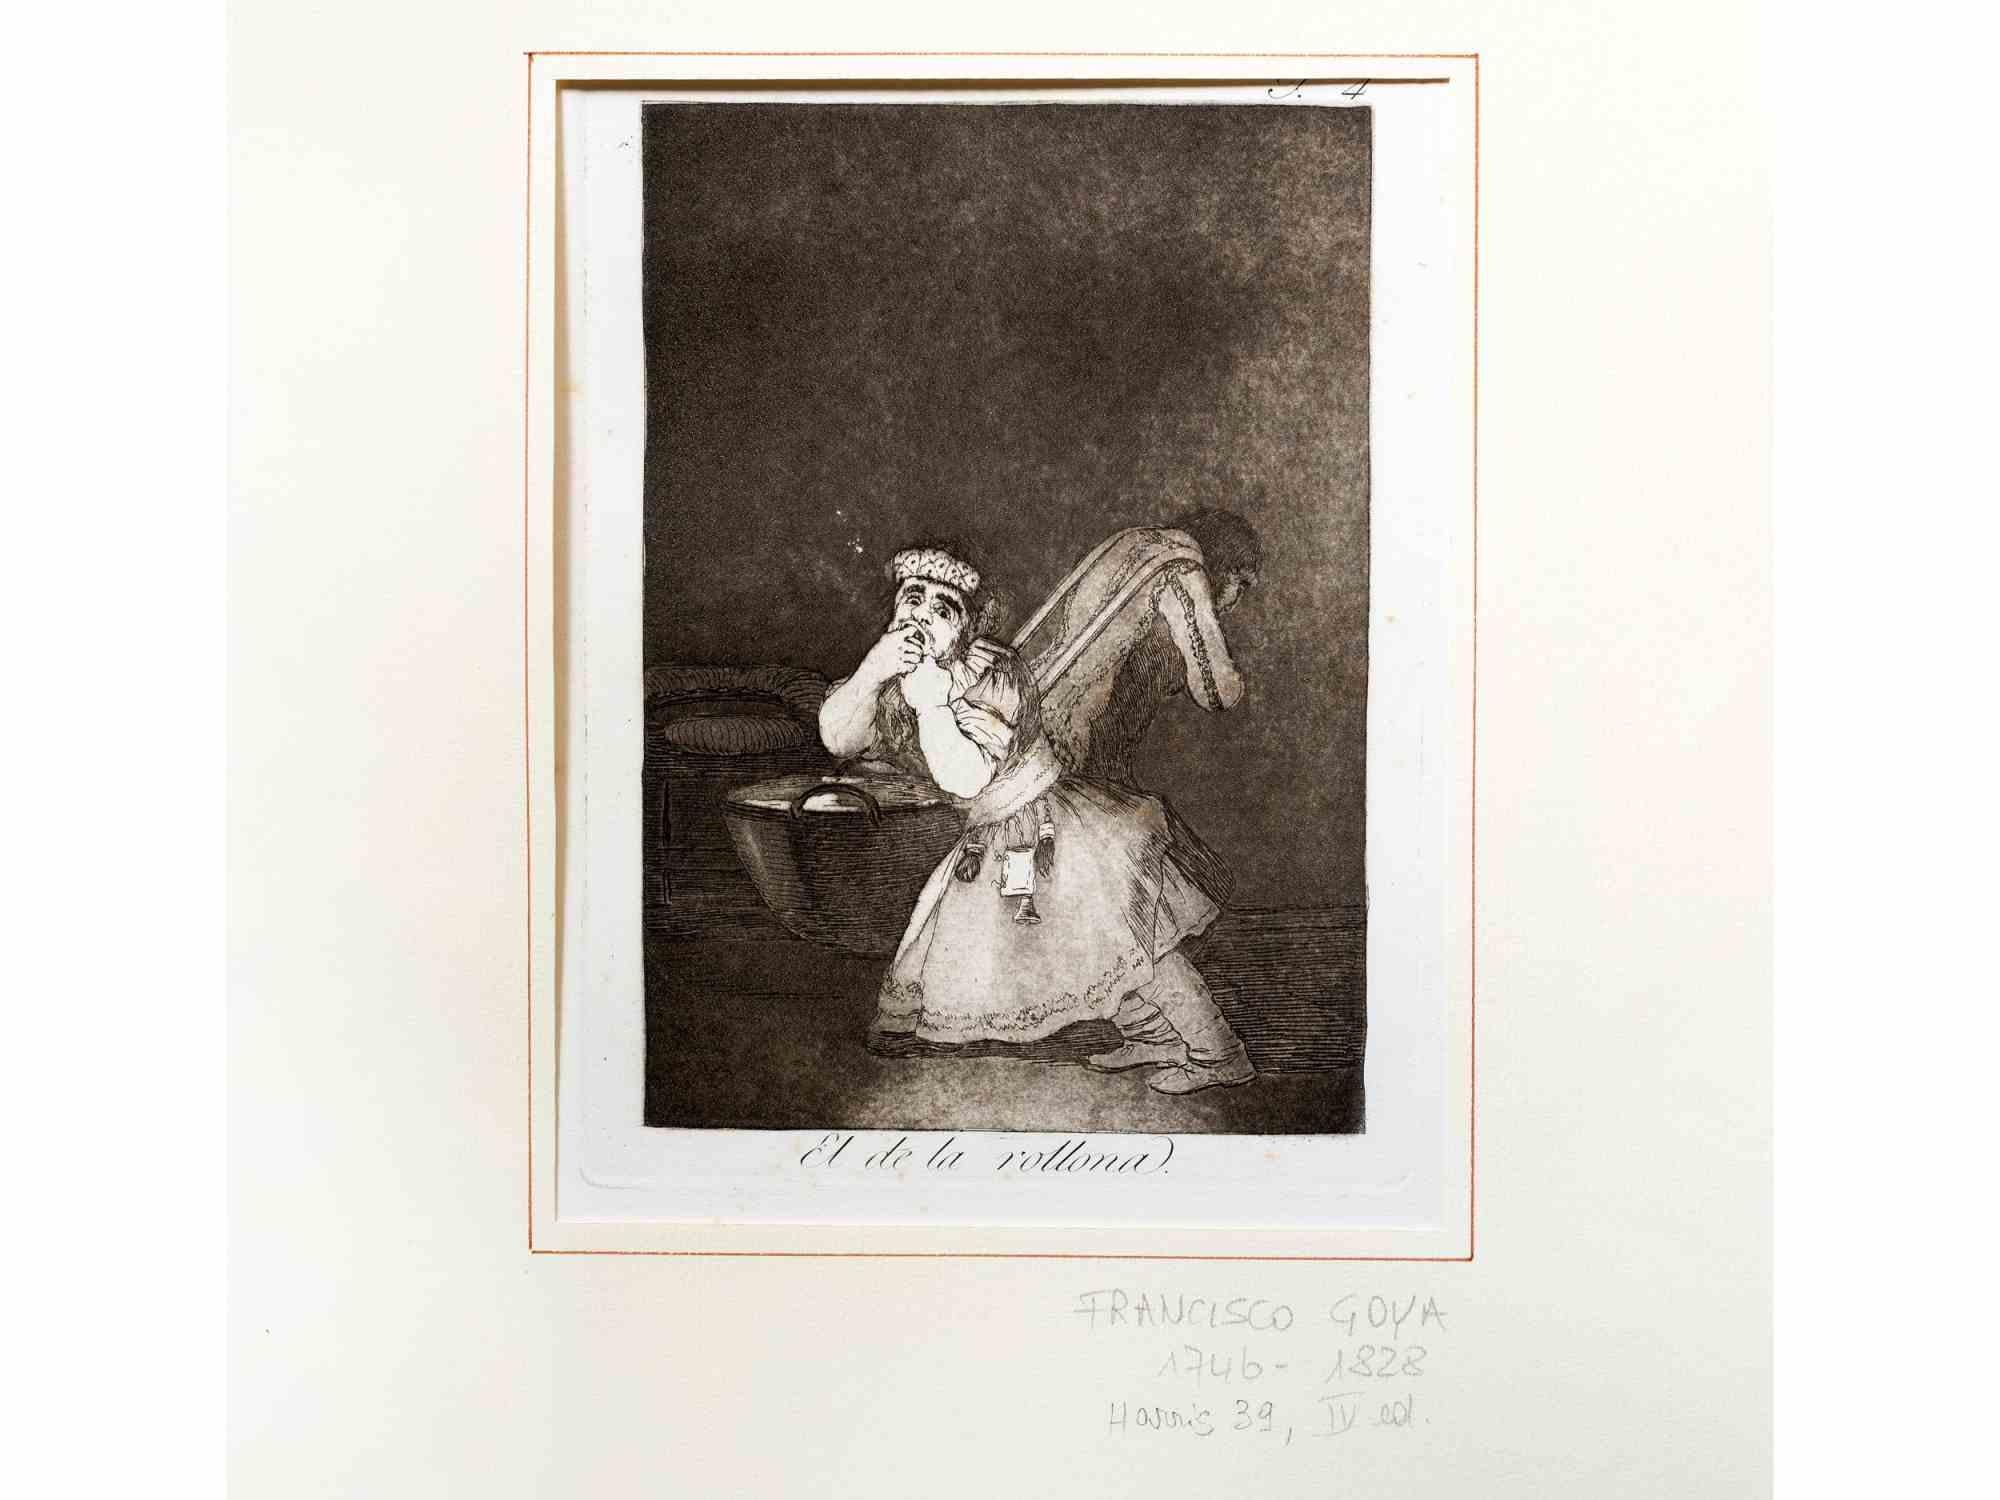 El de la Rollona est une œuvre d'art moderne réalisée par Francisco Goya et publiée en quatrième édition en 1878 par la Calcografia Nacional.

Gravure en noir et blanc et aquatinte brunie.

Dimensions : Image 20 x 15 cm Feuille 29 x 21 cm.

L'œuvre